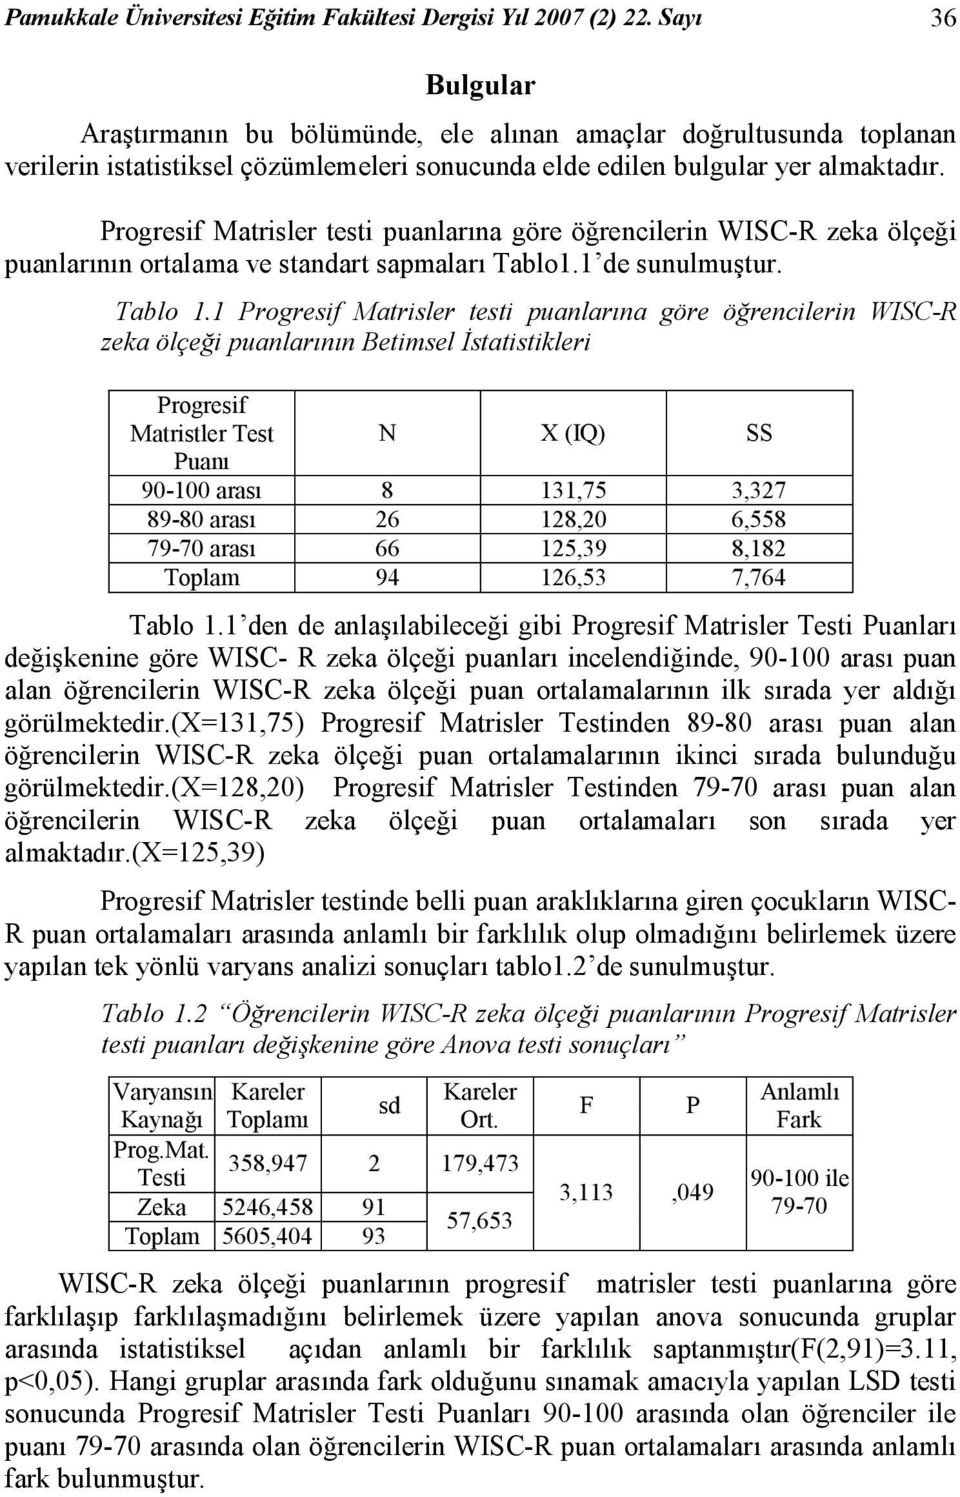 Progresif Matrisler testi puanlarına göre öğrencilerin WISC-R zeka ölçeği puanlarının ortalama ve standart sapmaları Tablo1.1 de sunulmuştur. Tablo 1.